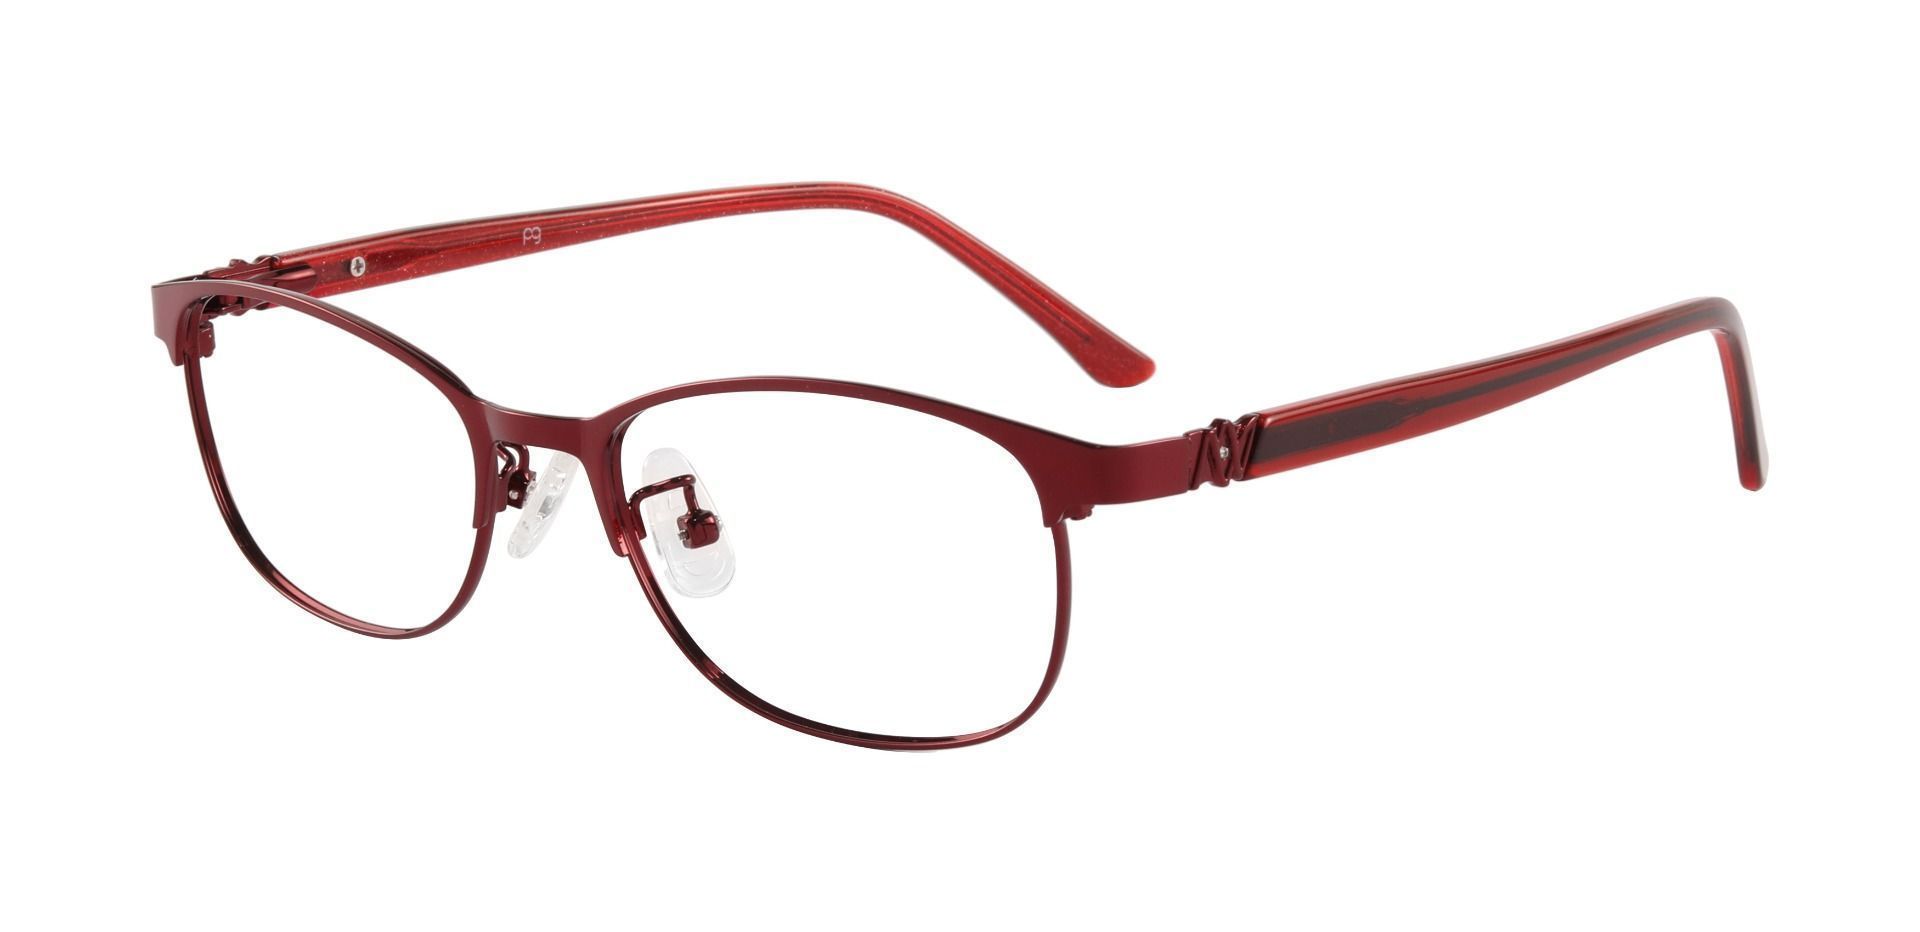 Luisa Oval Prescription Glasses - Red